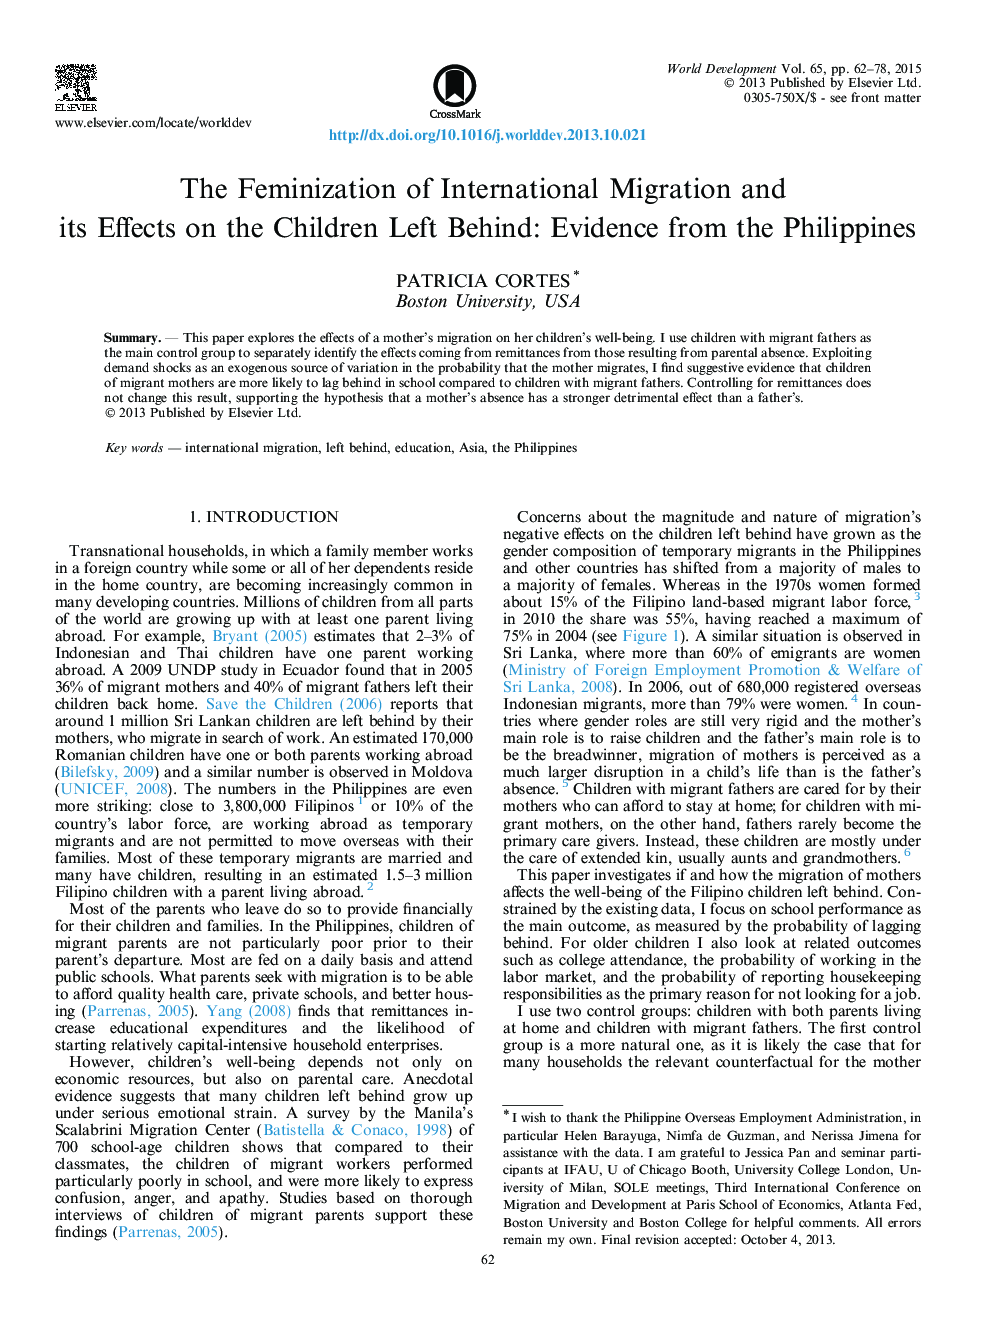 فمینیسم مهاجرت بین المللی و تاثیر آن بر کودکان اطراف: مدارکی از فیلیپین